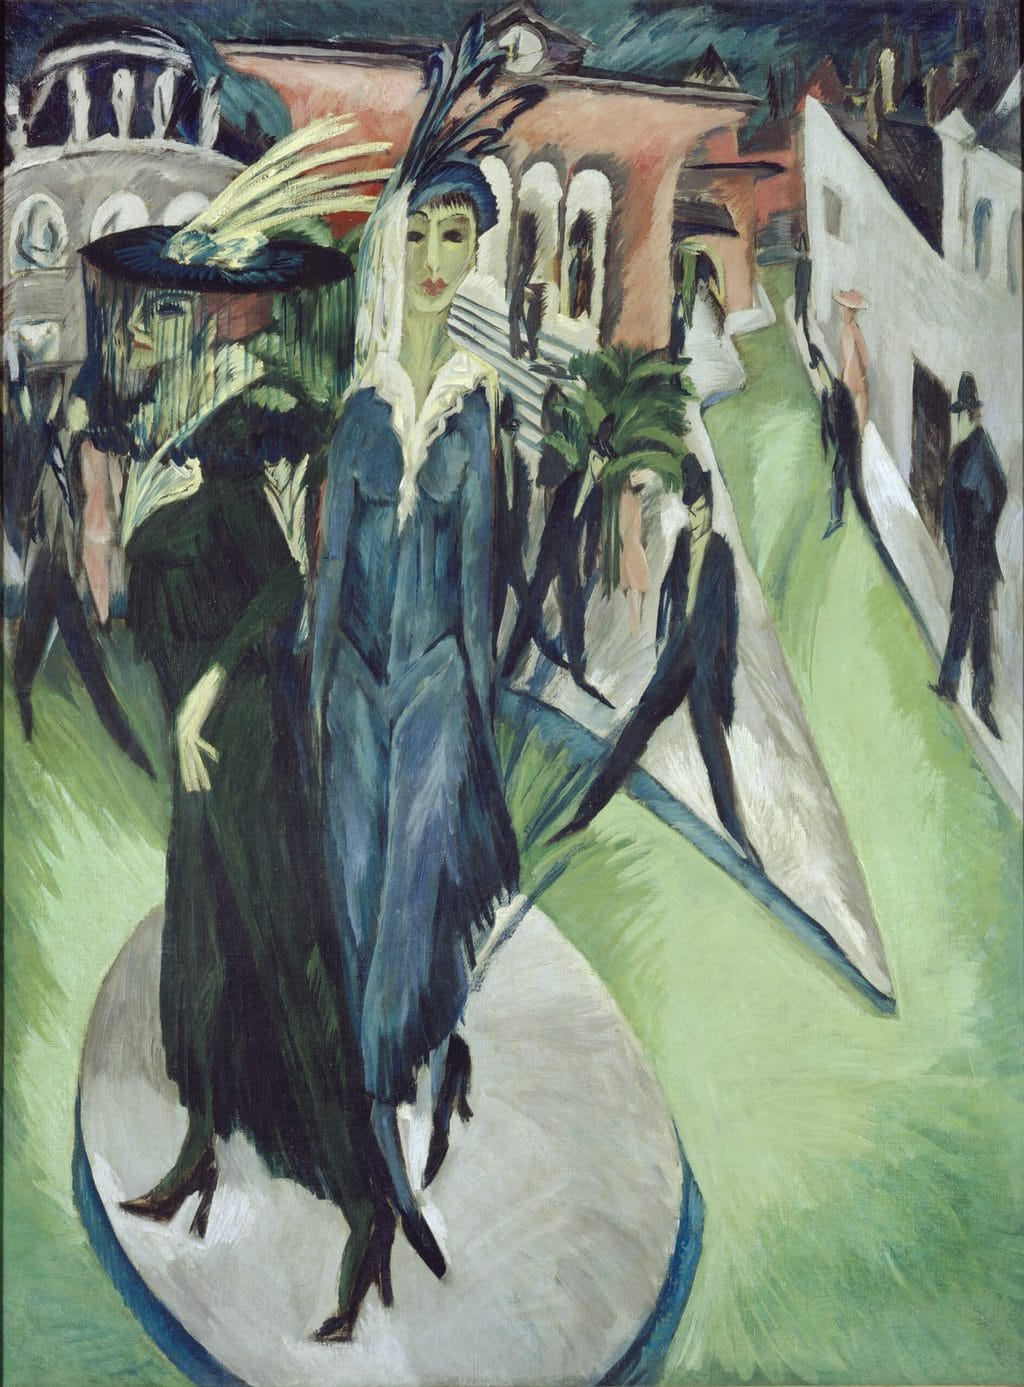 "Potsdamer Platz" van Ernst Ludwig Kirchner in de Neue Nationalgalerie in Berlijn